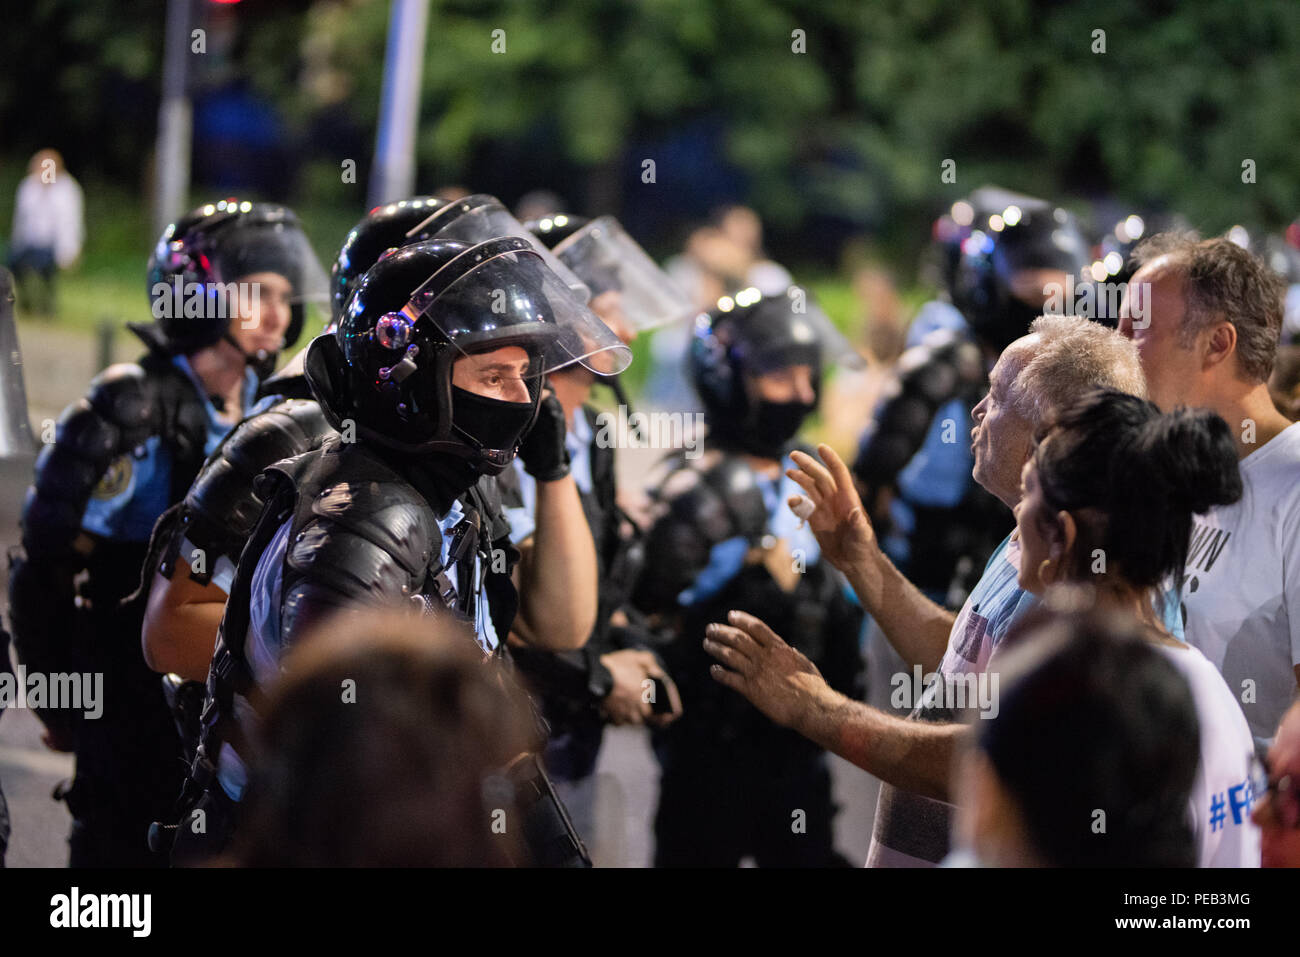 La Romania, Bucarest - Agosto 10, 2018: gli ufficiali di polizia sostenendo con manifestanti pacifici prima di un altro episodio di violenza Foto Stock